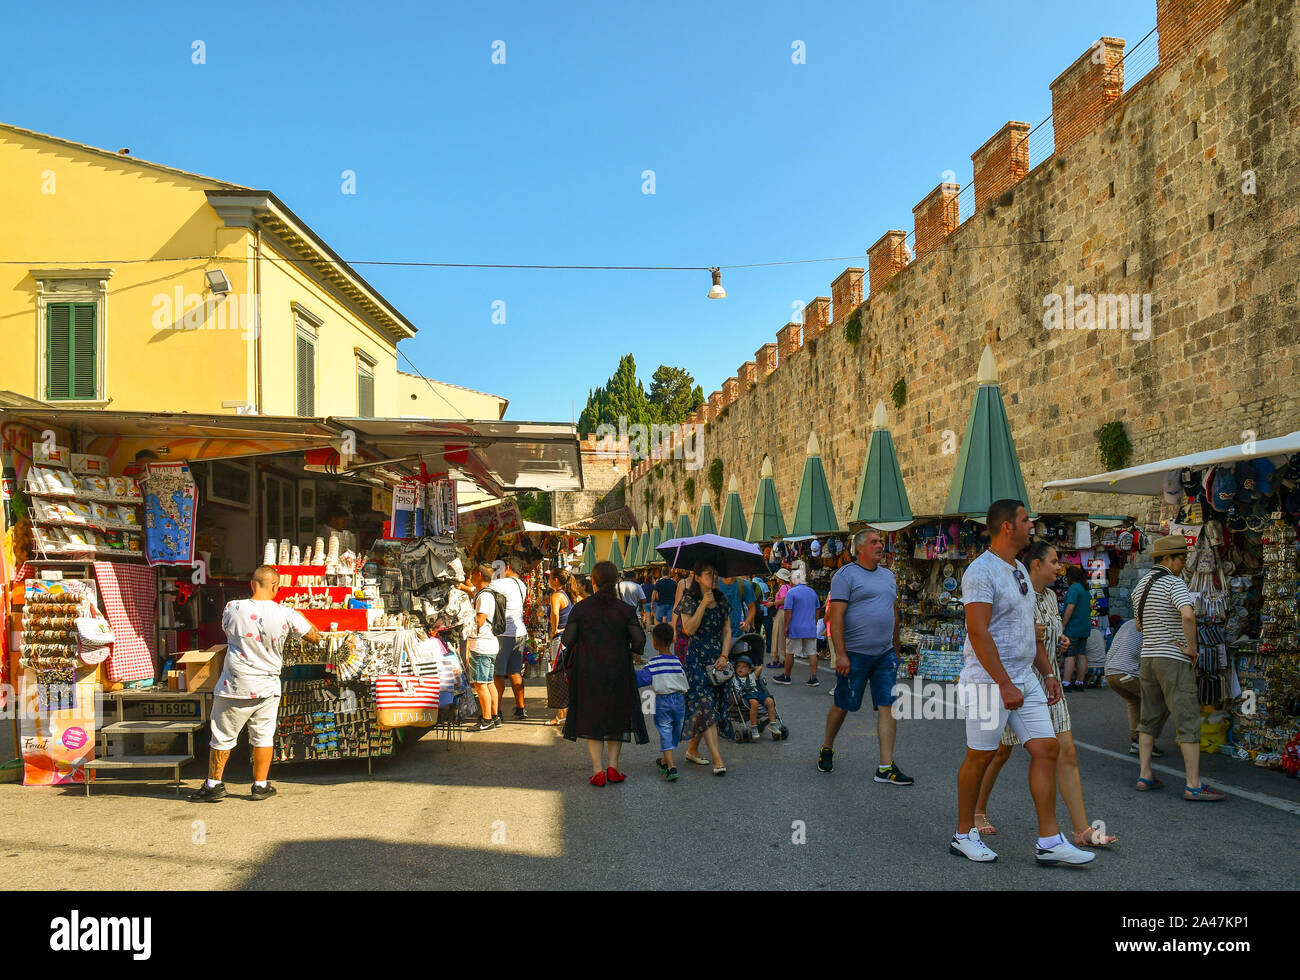 Vue sur la rue de la célèbre destination touristique et les gens d'acheter à des marchands de souvenirs et les murs de la vieille ville en une journée ensoleillée, Pise, Toscane, Italie Banque D'Images